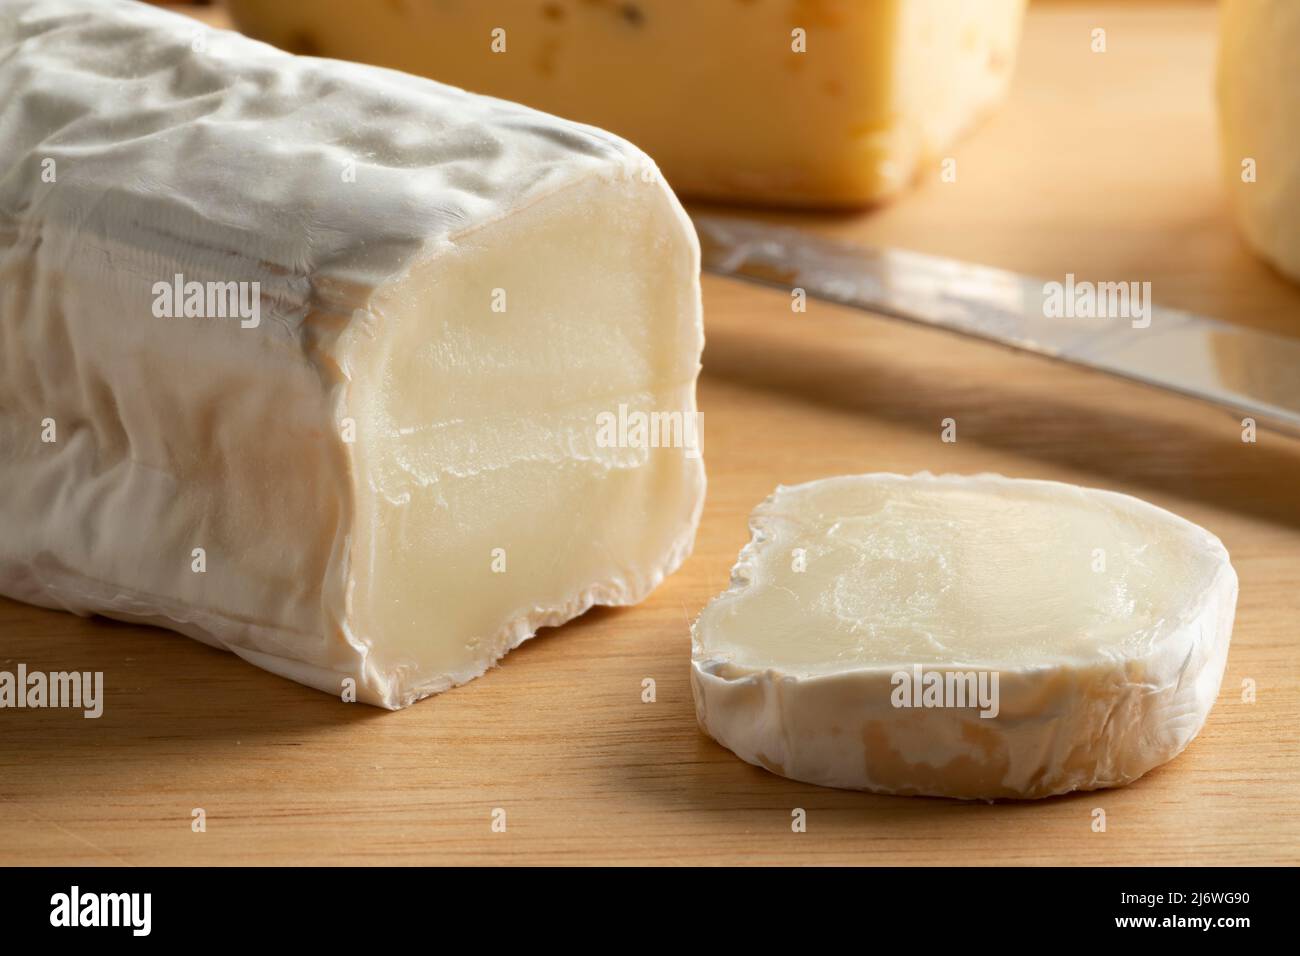 Buche de Chevre, fromage de chèvre, avec une croûte blanche et une tranche sur une planche à découper Banque D'Images